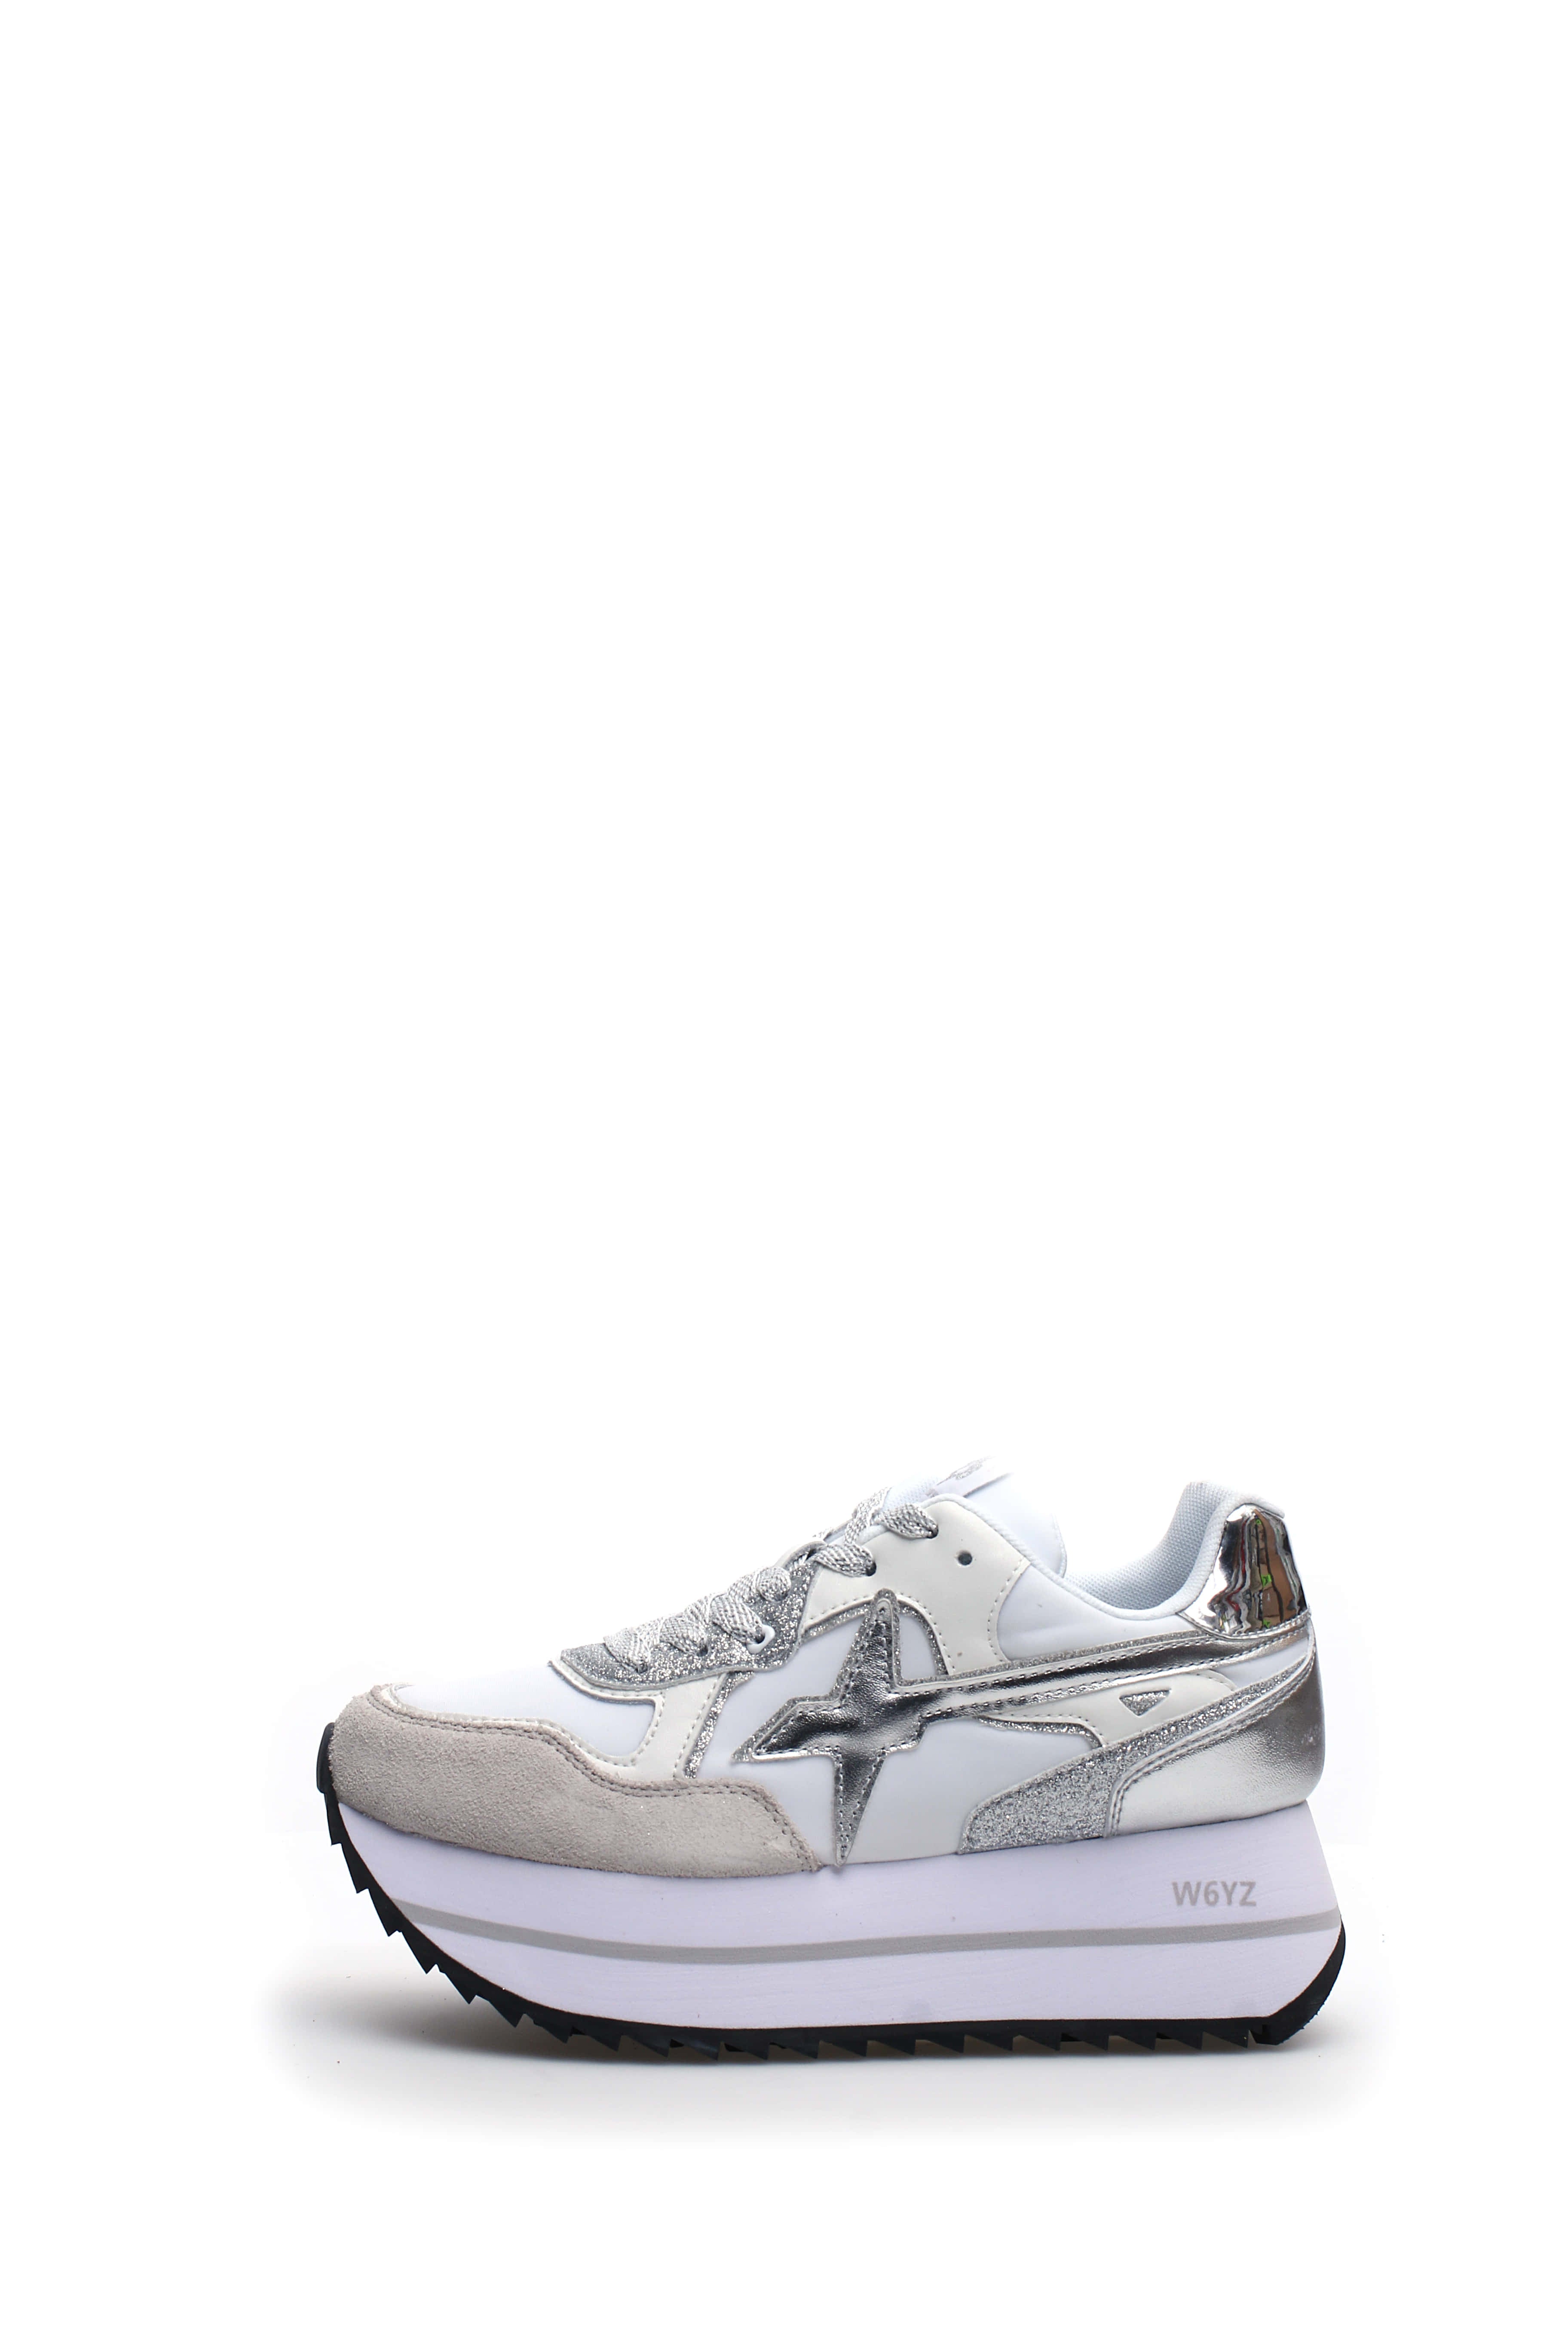 W6YZ-Sneaker Donna Deva W-White Silver